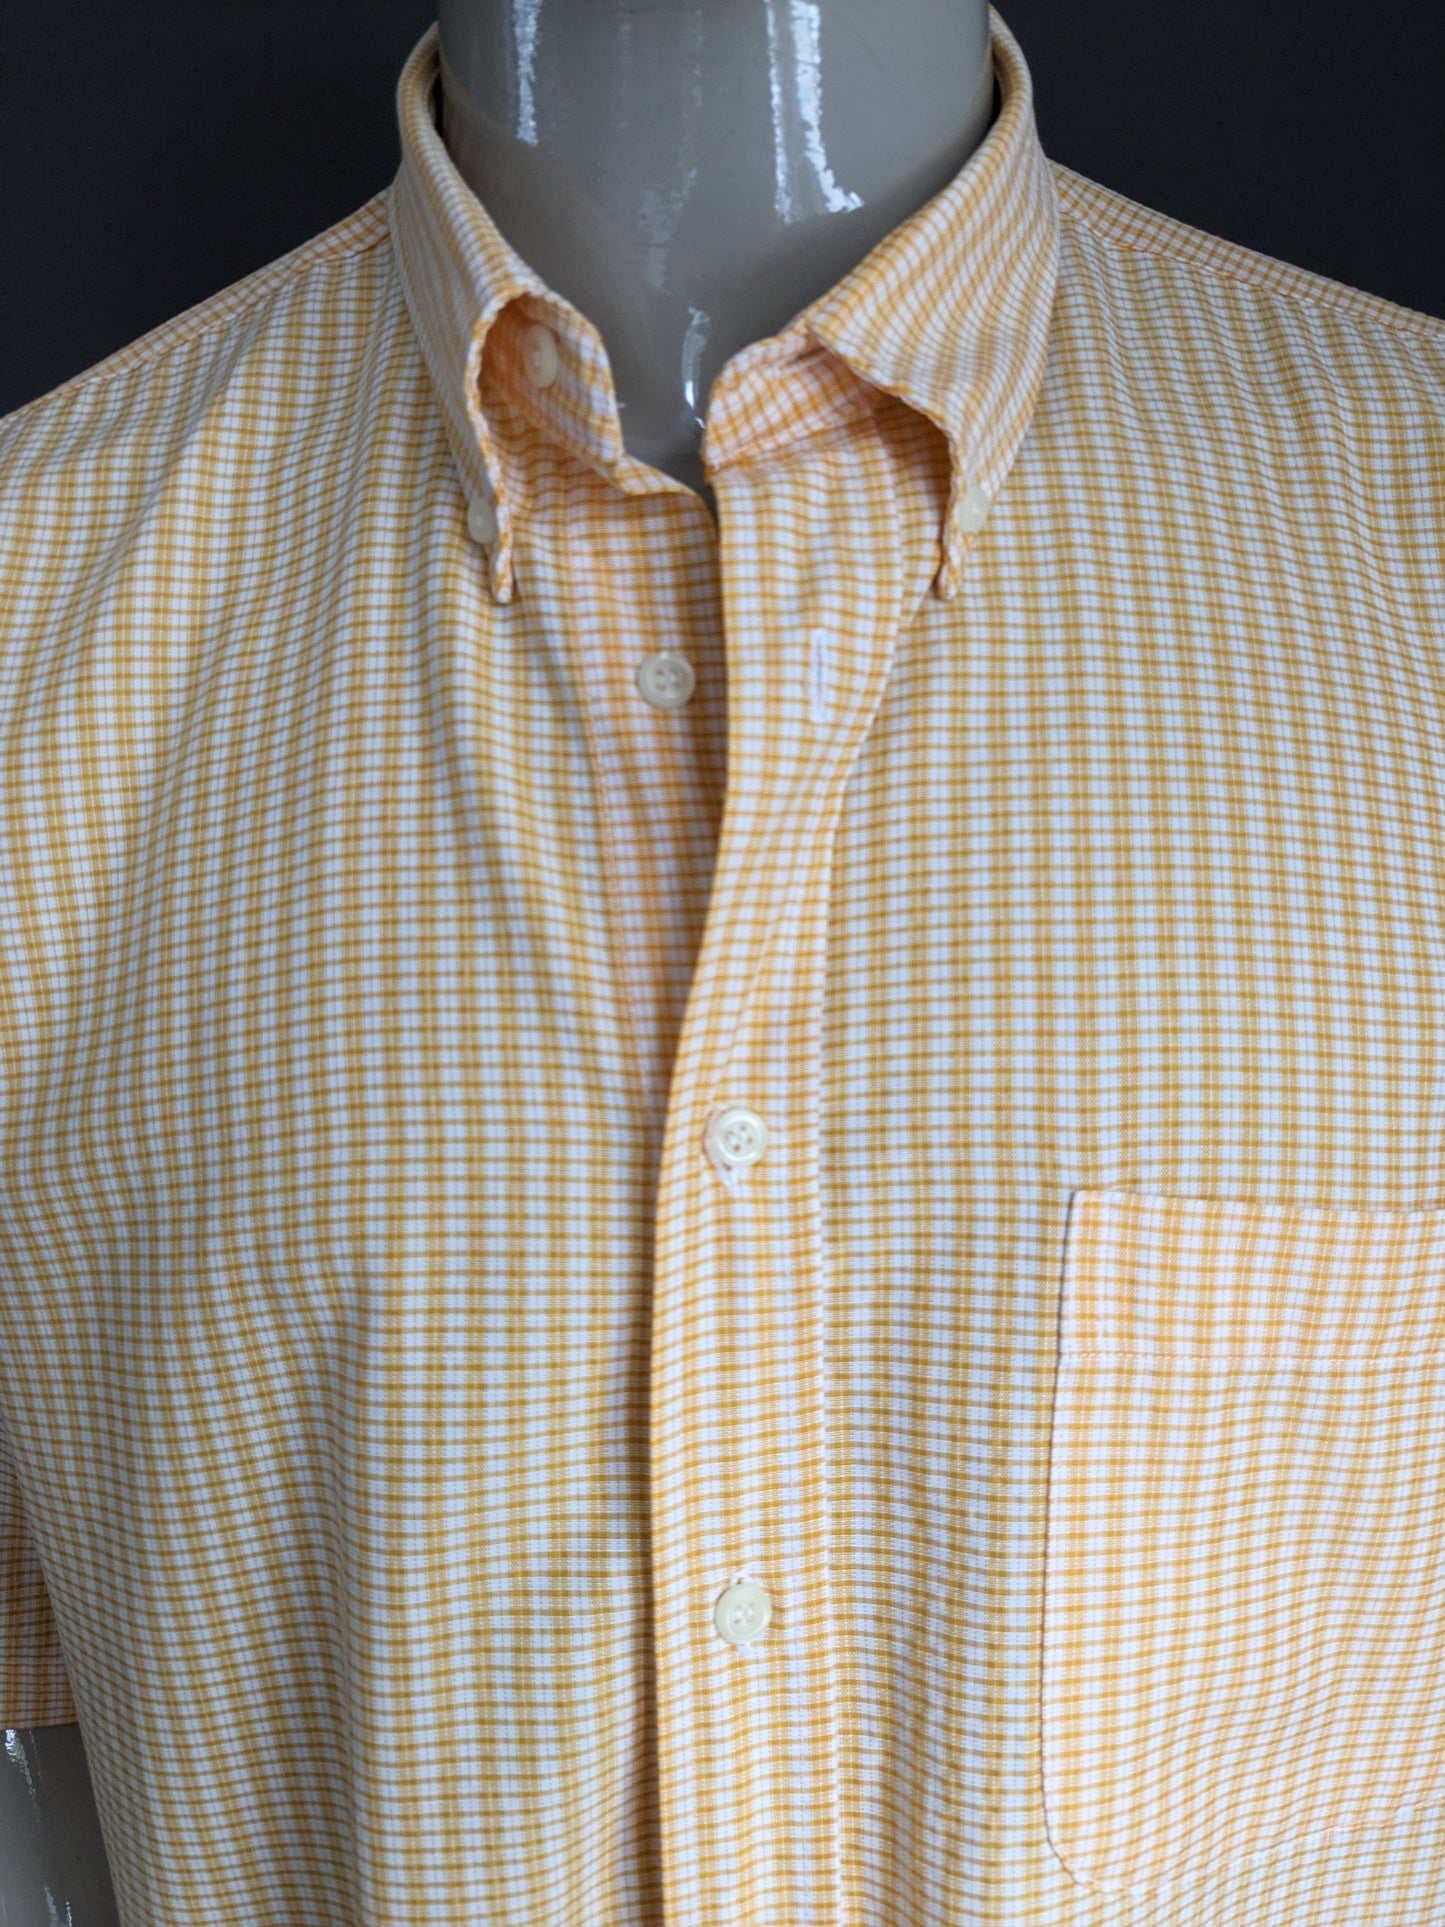 Shirt club casual vintage manica corta. Motivo beige arancione. Dimensione XL / XXL-2XL.